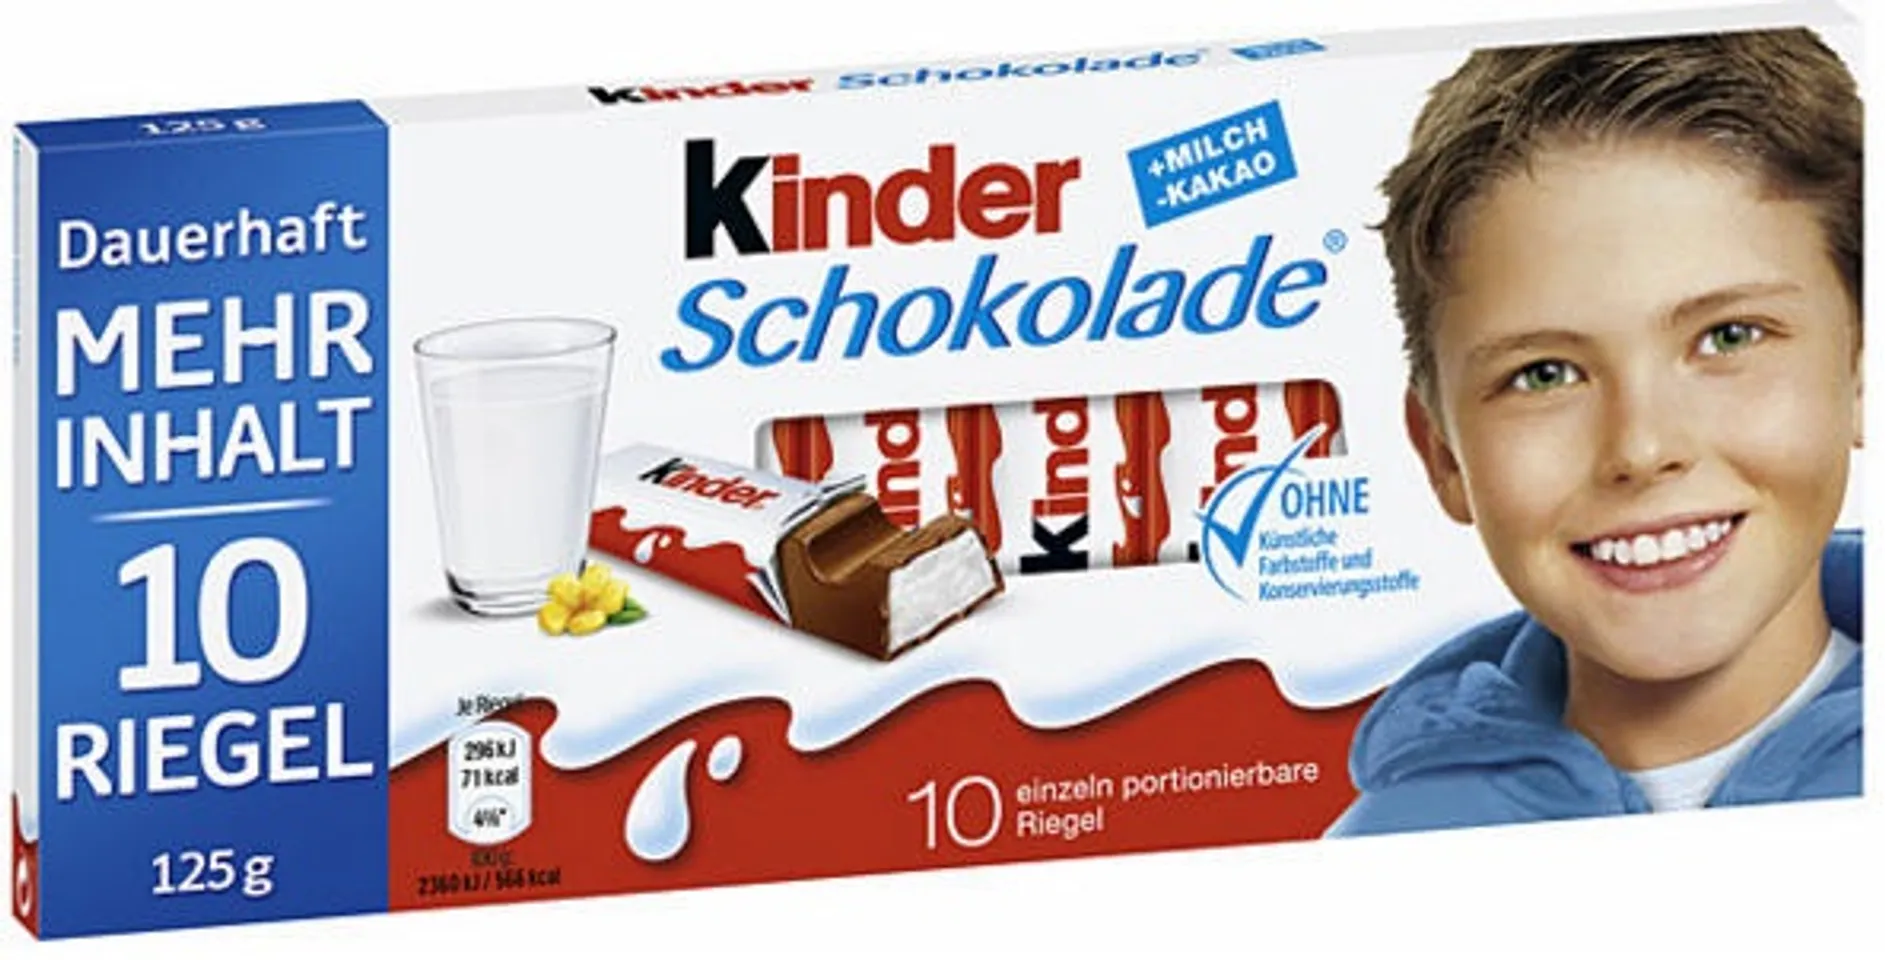 Hộp kẹo socola Kinder dạng thanh